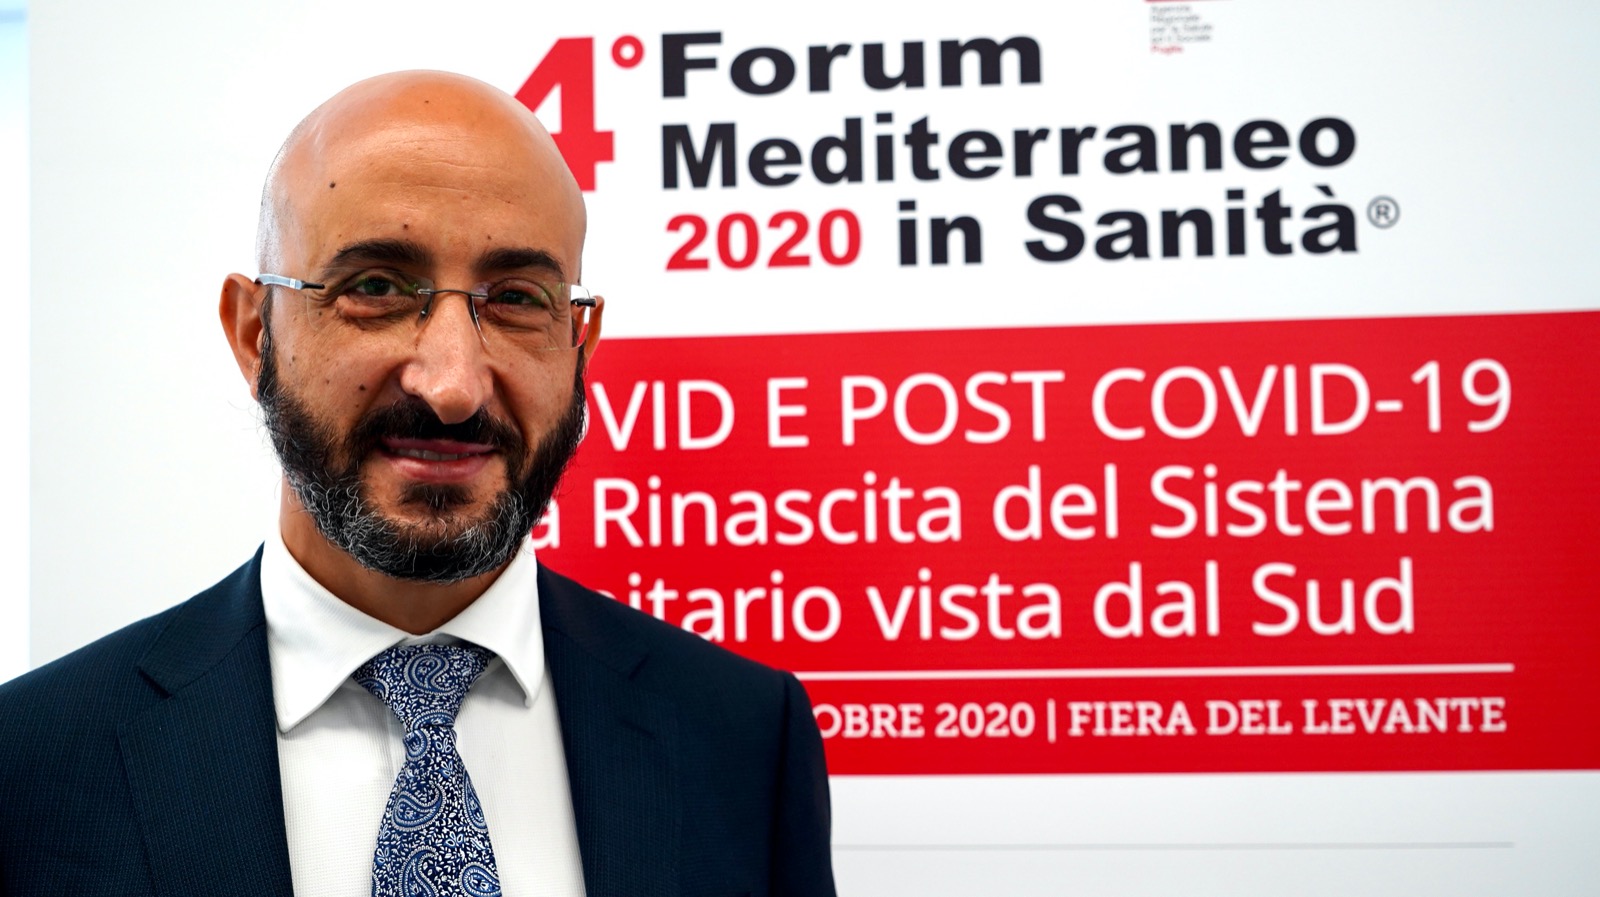 Galleria FdL Prima giornata di Forum mediterraneo in Sanita: la sintesi - Diapositiva 1 di 3